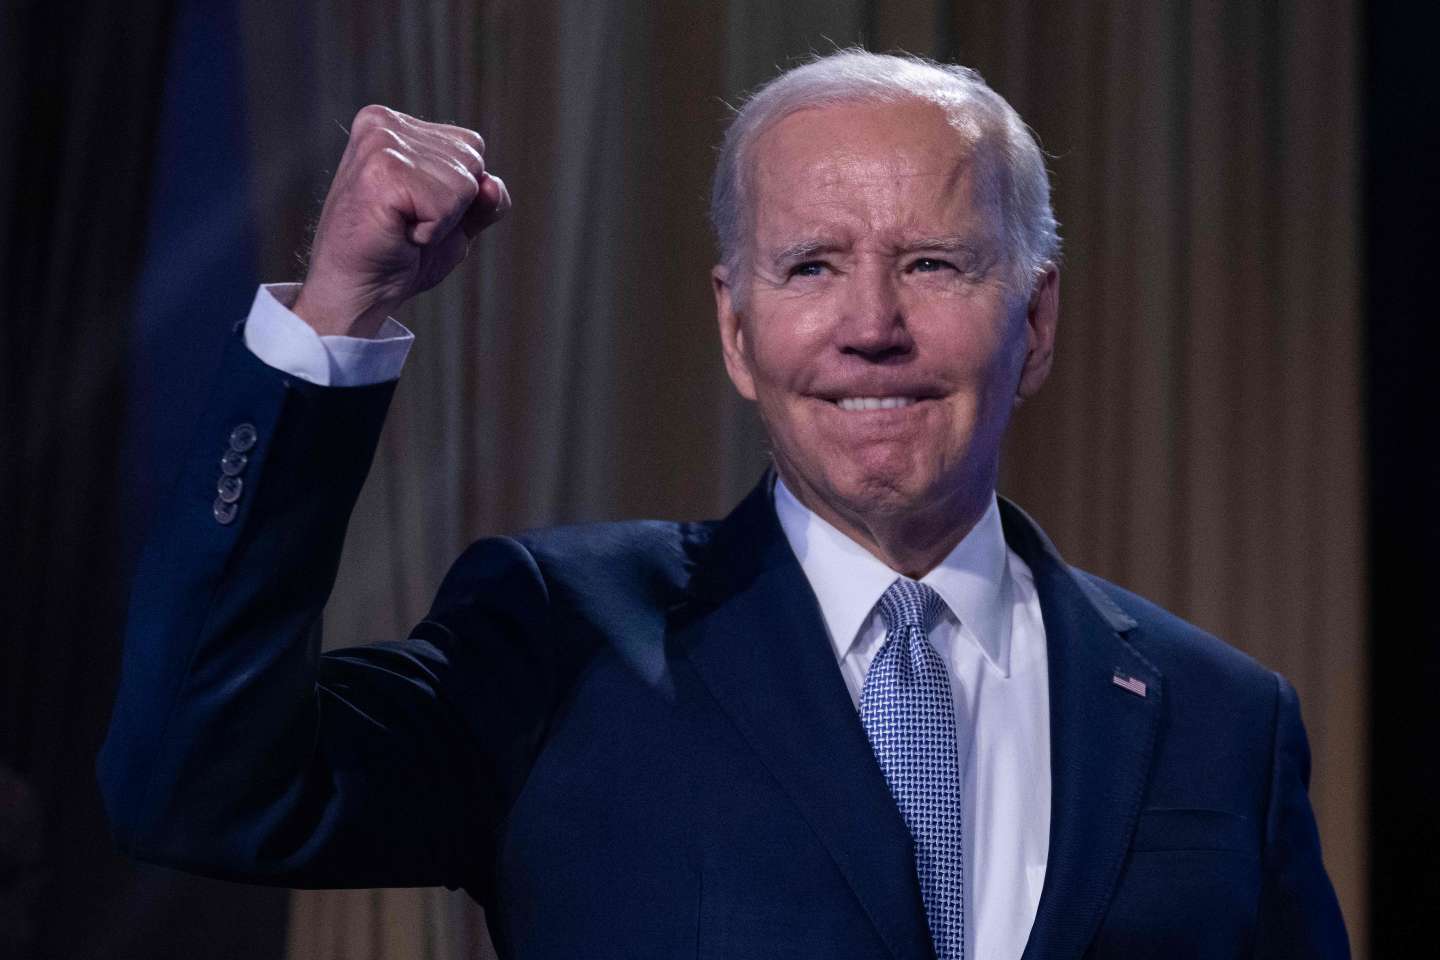 Le pari risqué de Joe Biden